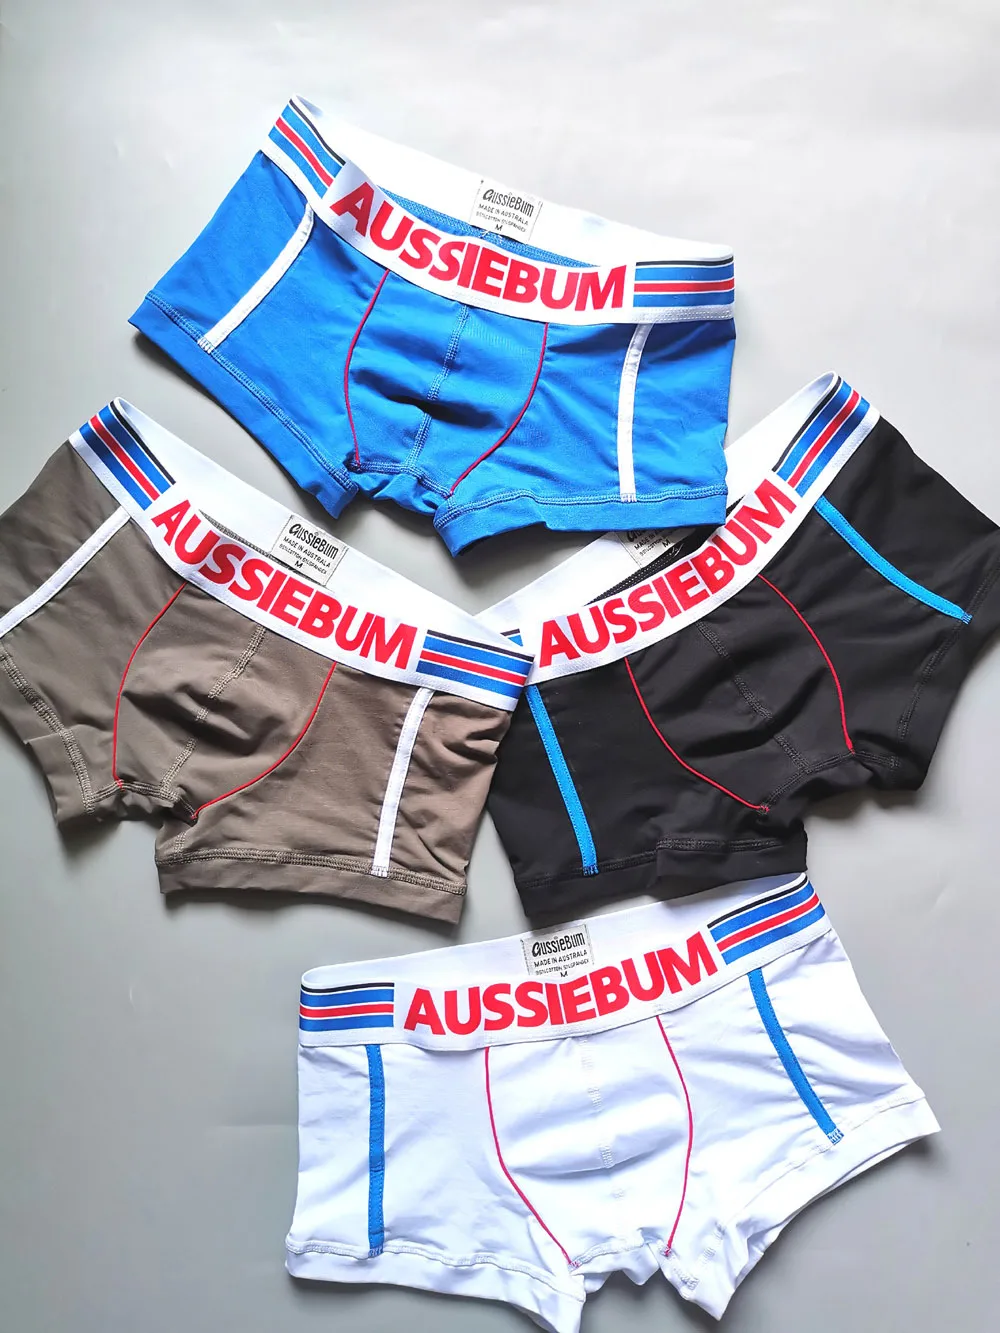 mens boxers Aussiebum Cotton men's boxers Young students' boxer shorts men's boxers underwear custom boxers